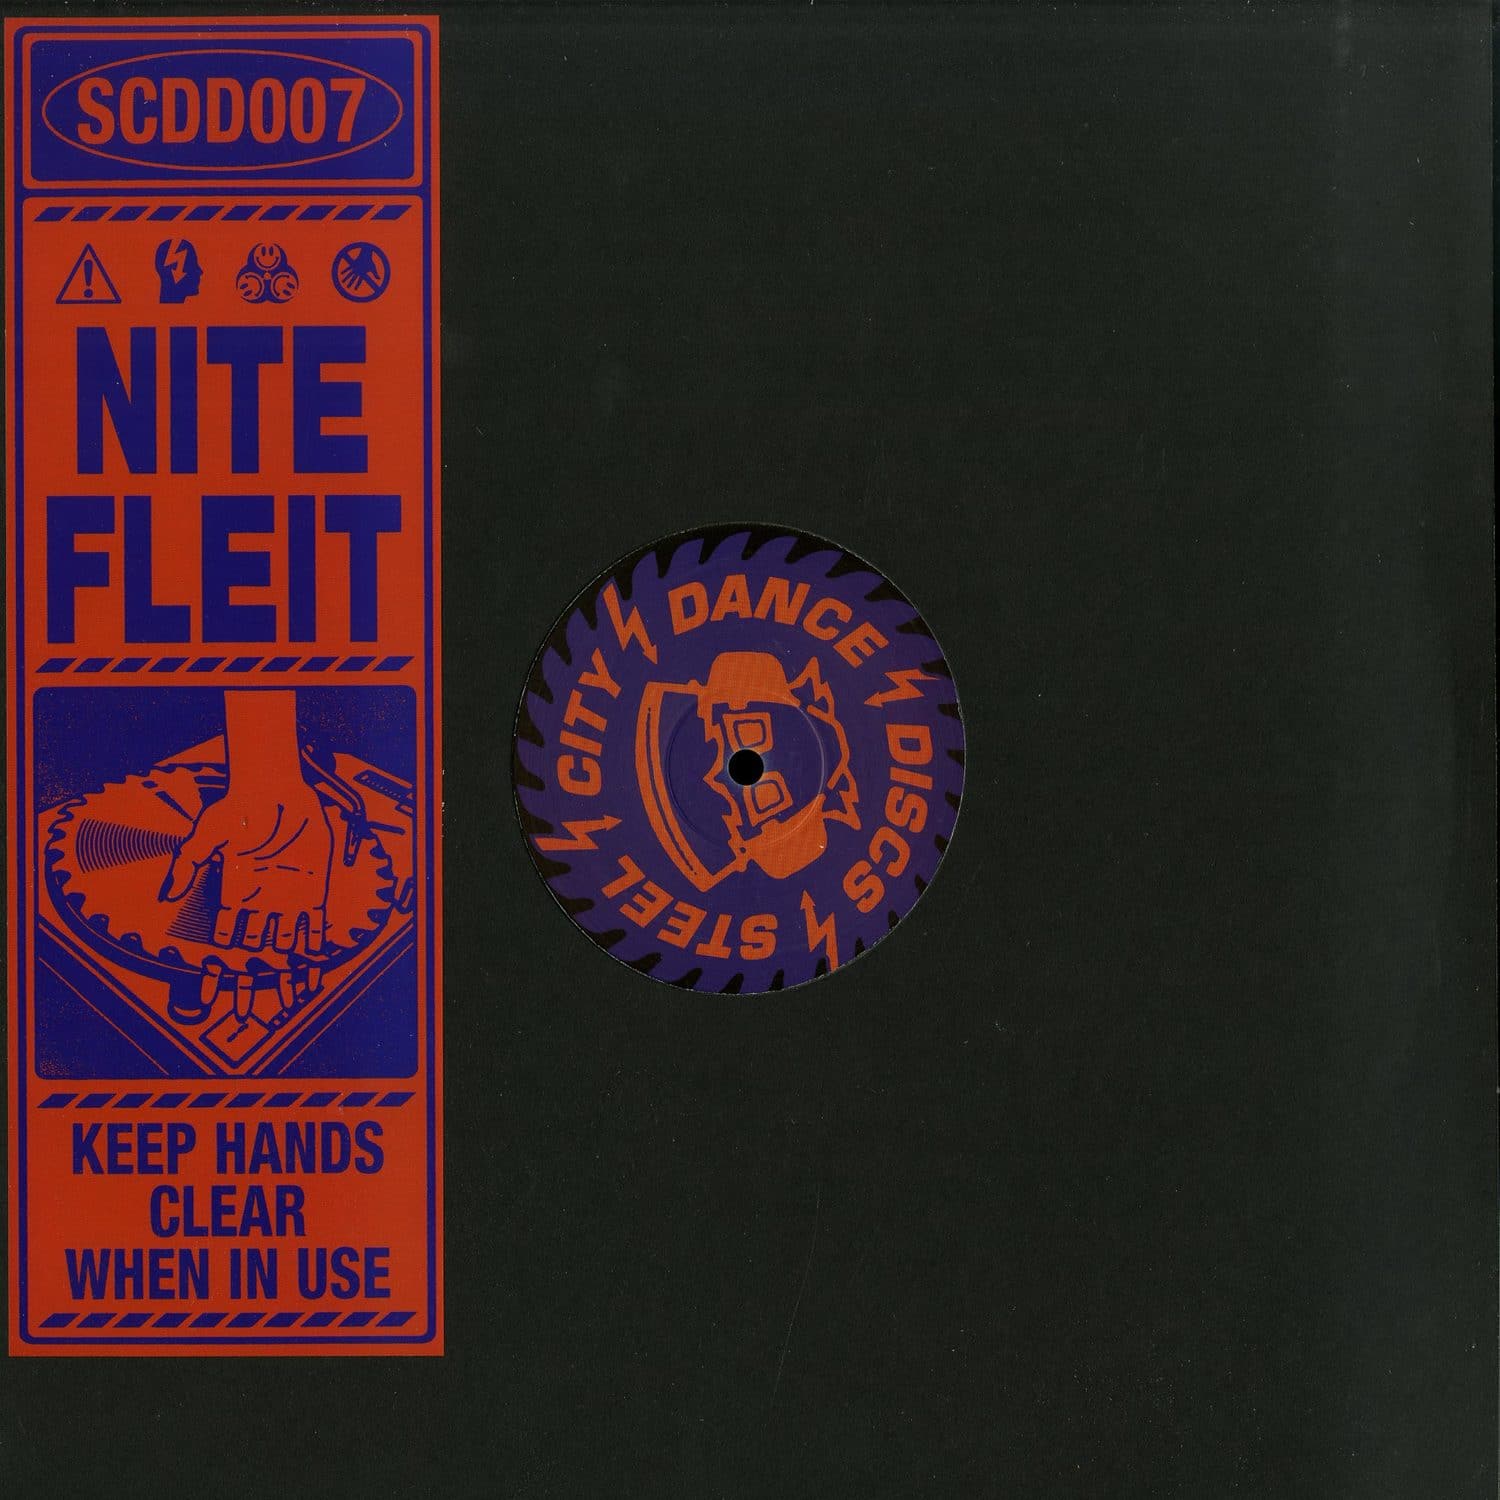 Nite Fleit - SCDD007